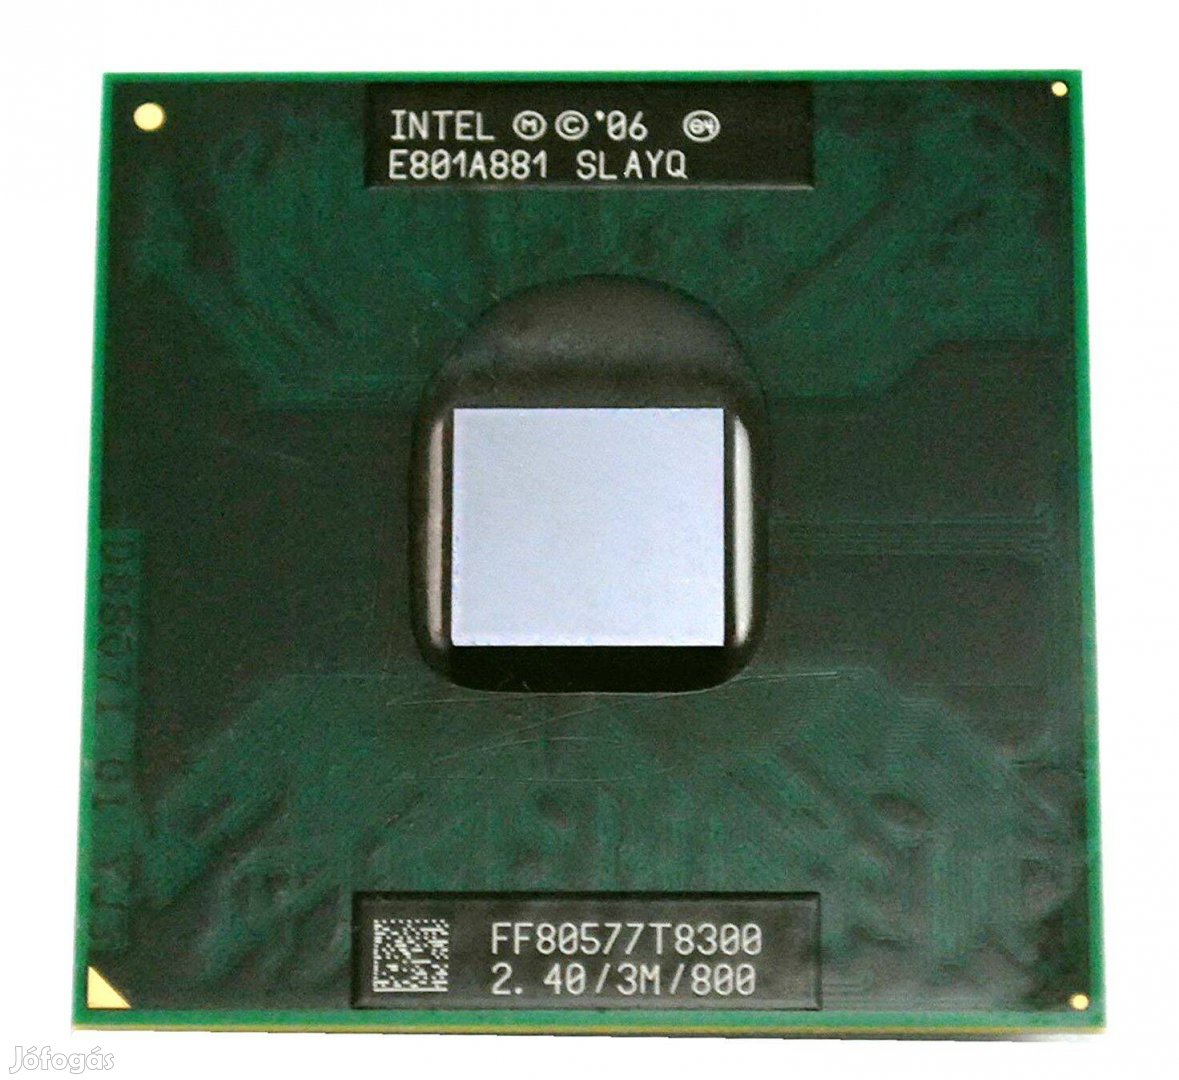 Intel T8300 M0 Slayq Core 2 Duo processzor 2.4Ghz 45nm 800 FSB Socketp